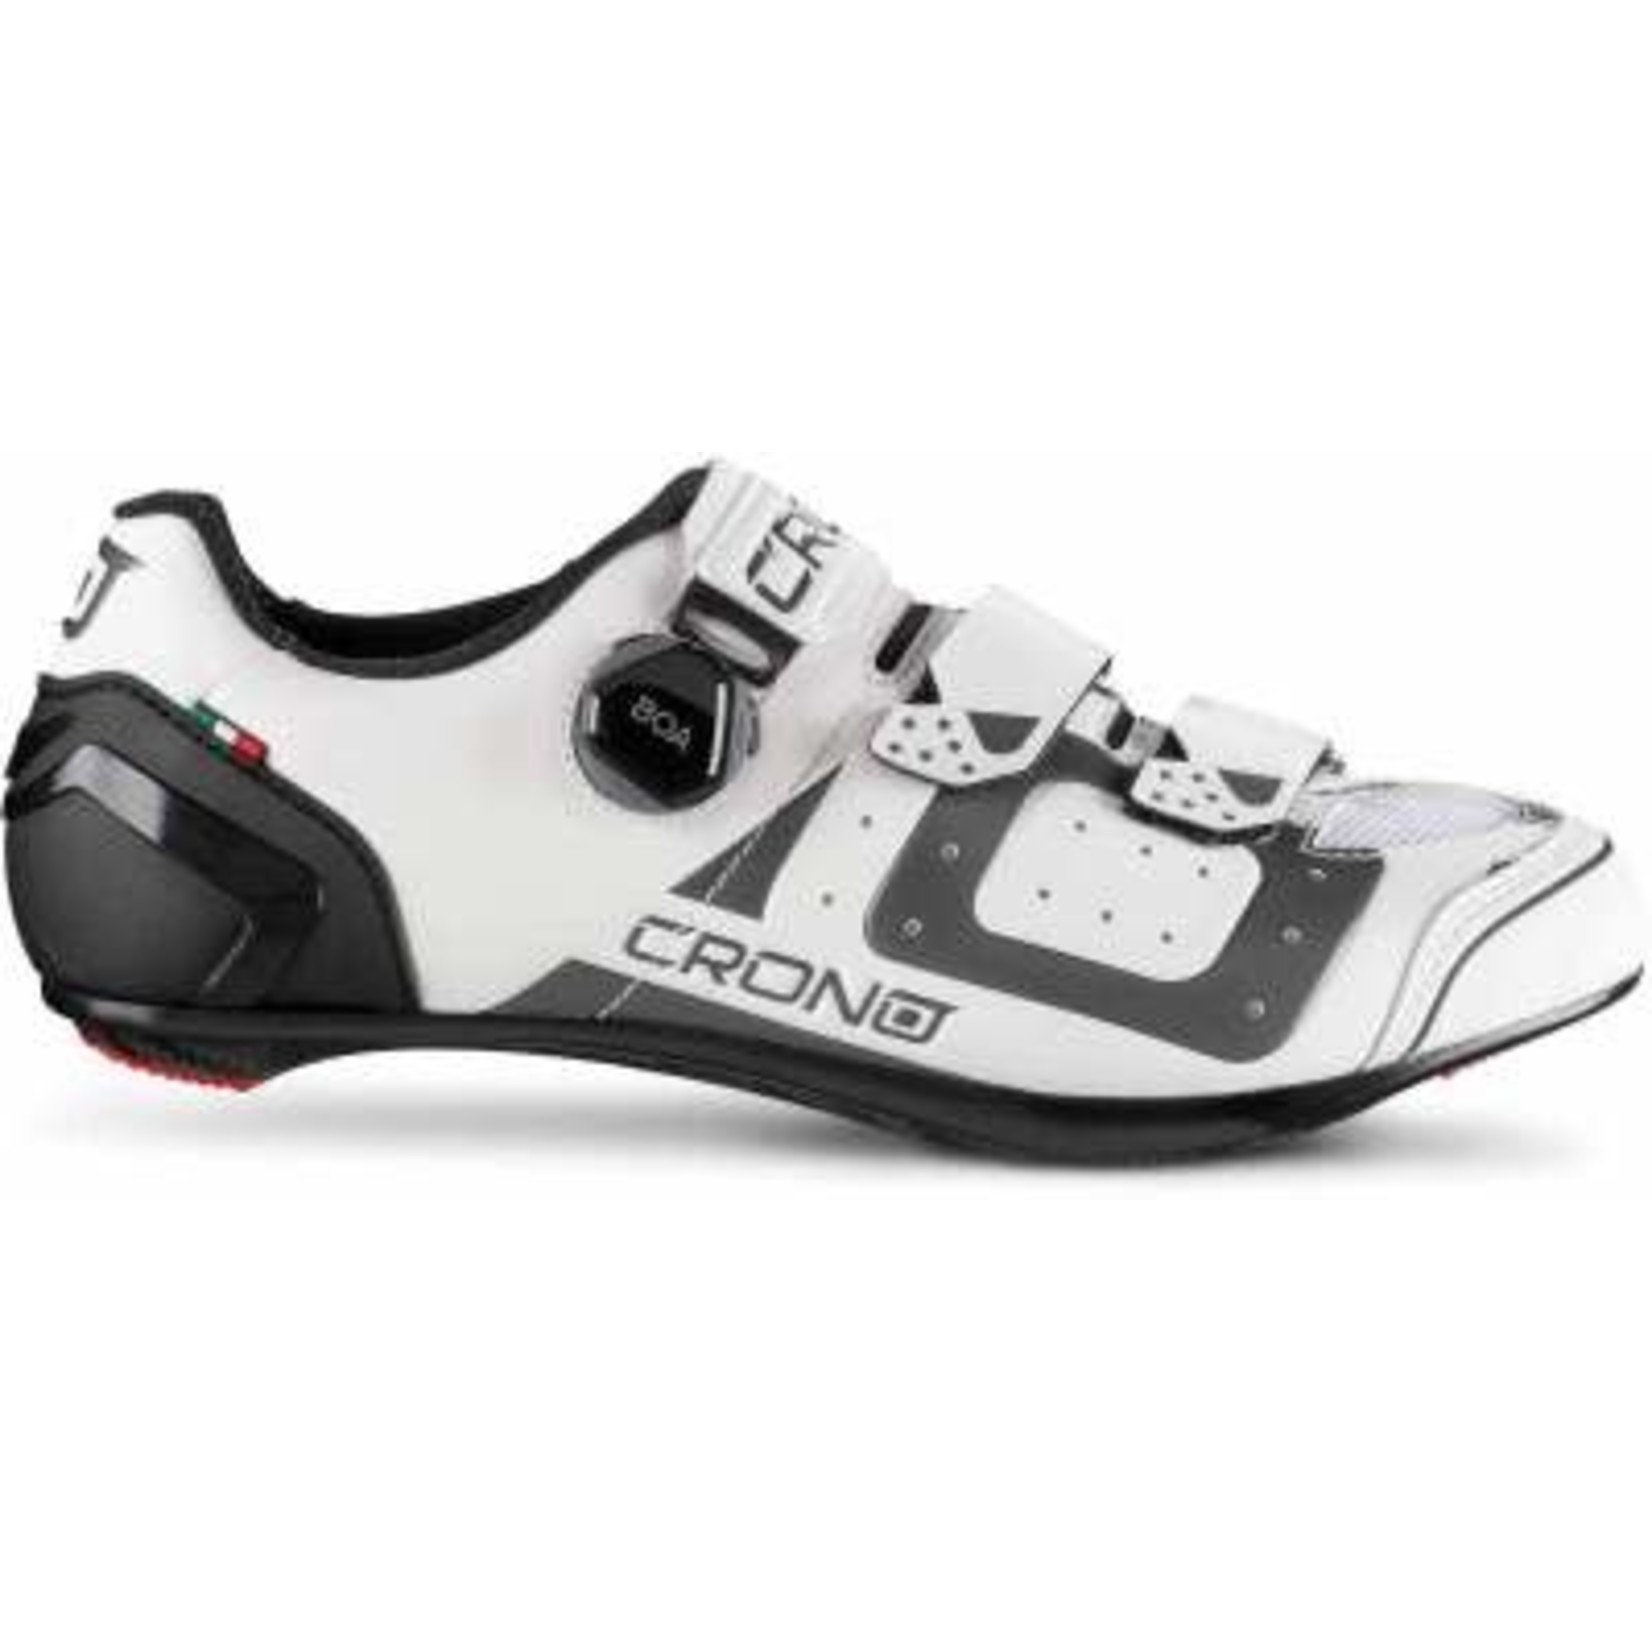 Crono Crono CR3 Nylon Road Shoes